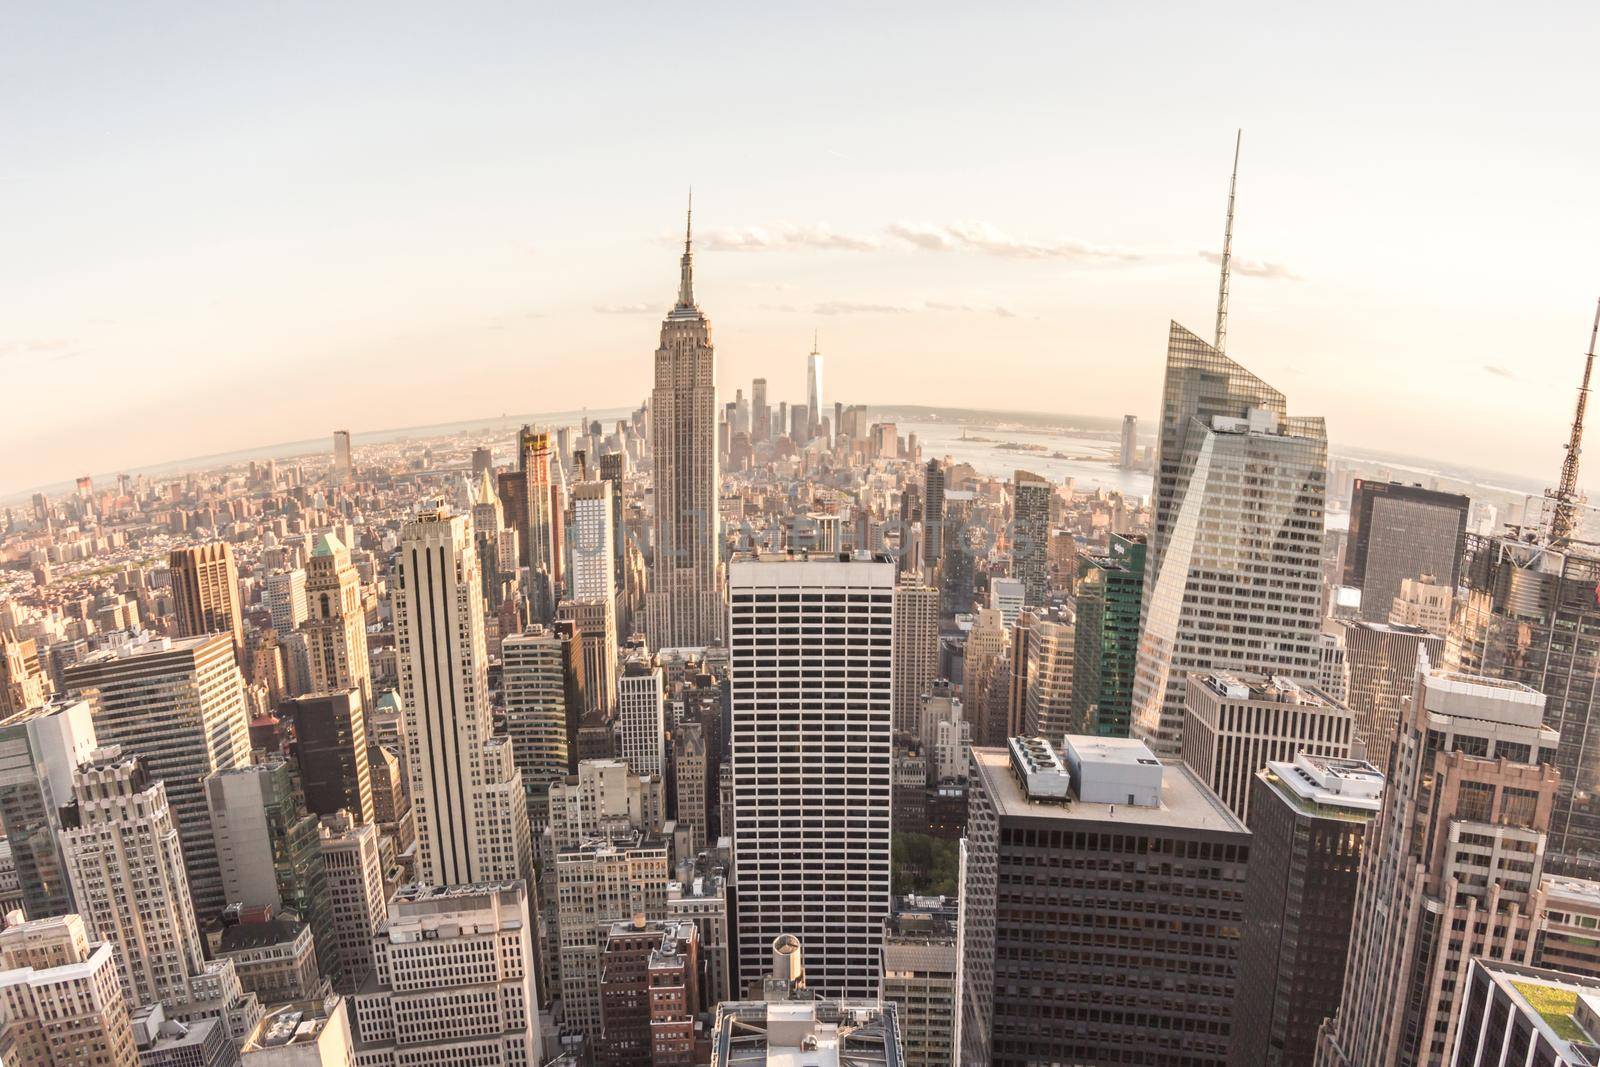 New York City skyline panorama at sunset. Fisheye lens effect